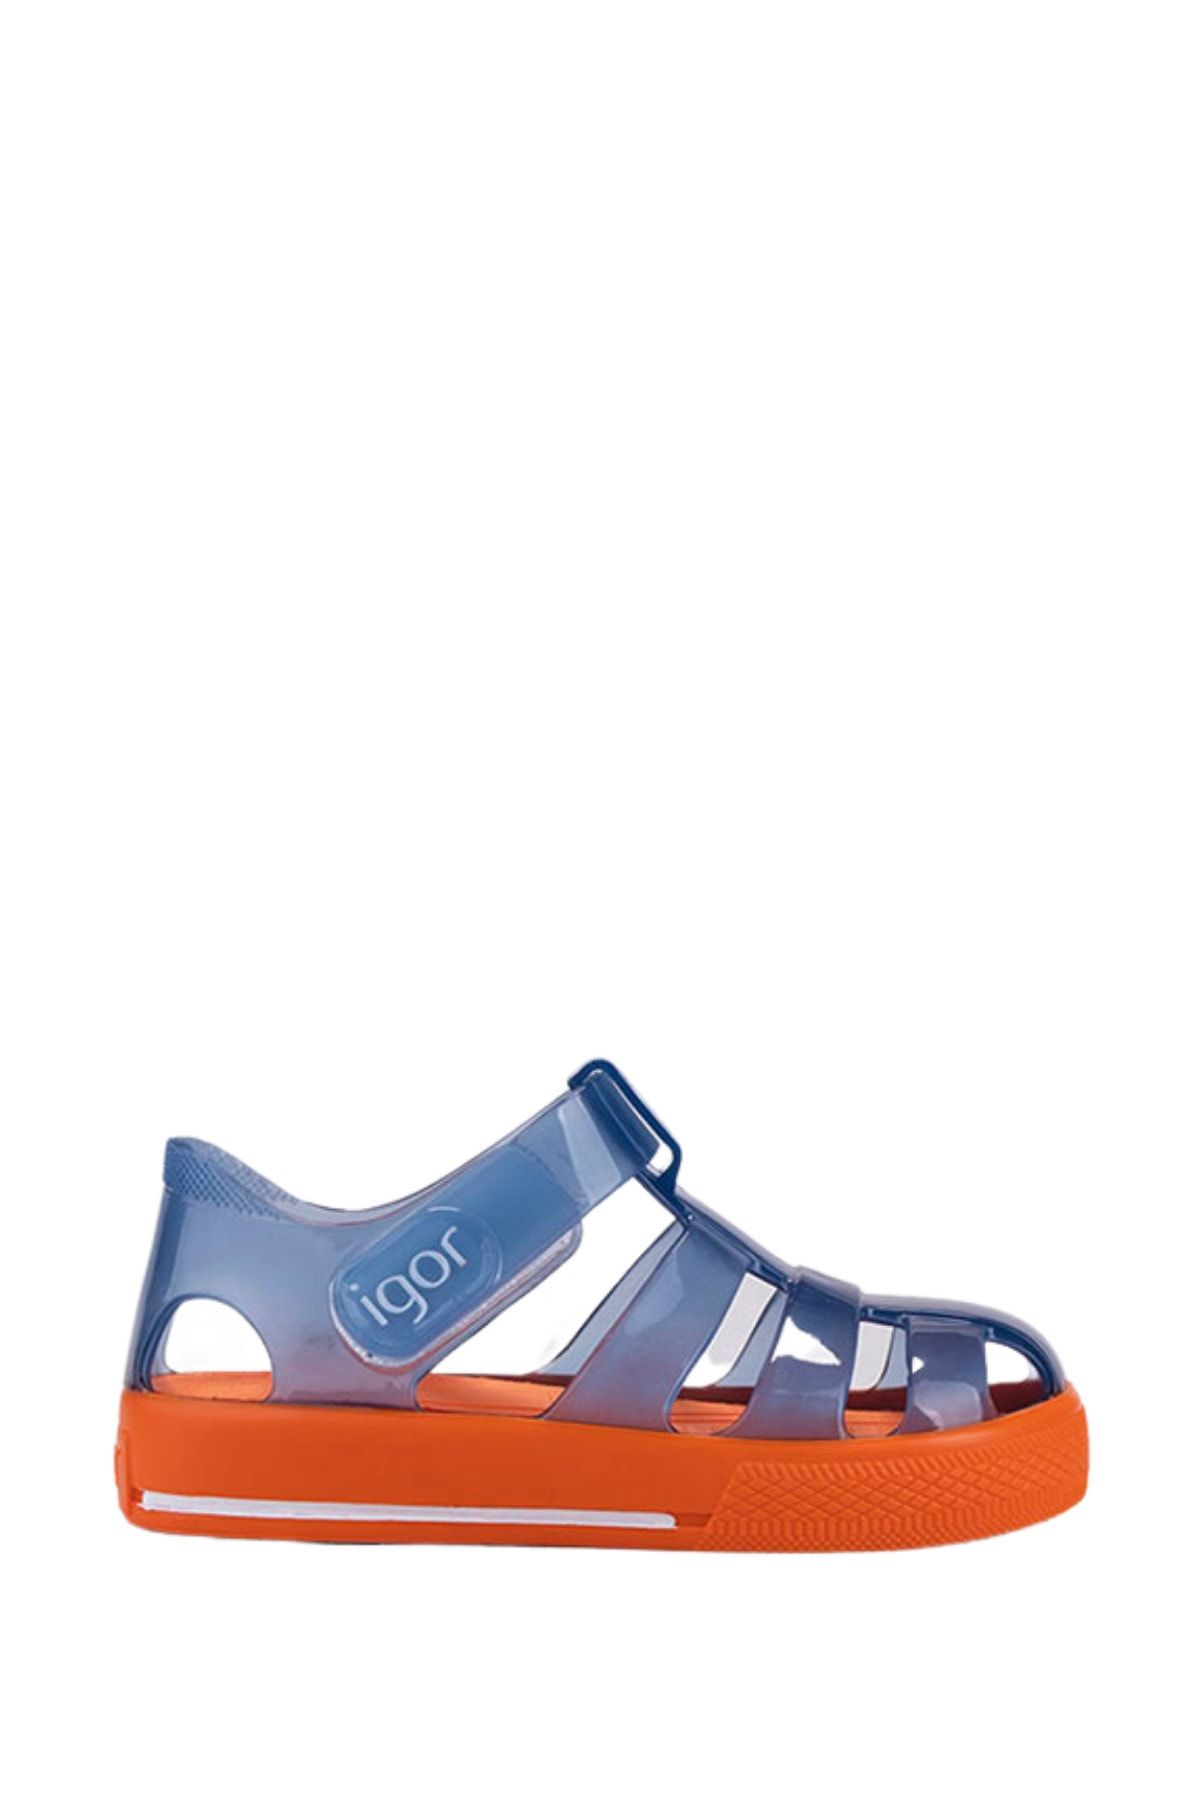 IGOR S10270 Star Bicolor Çocuk Mavi Turuncu Sandalet